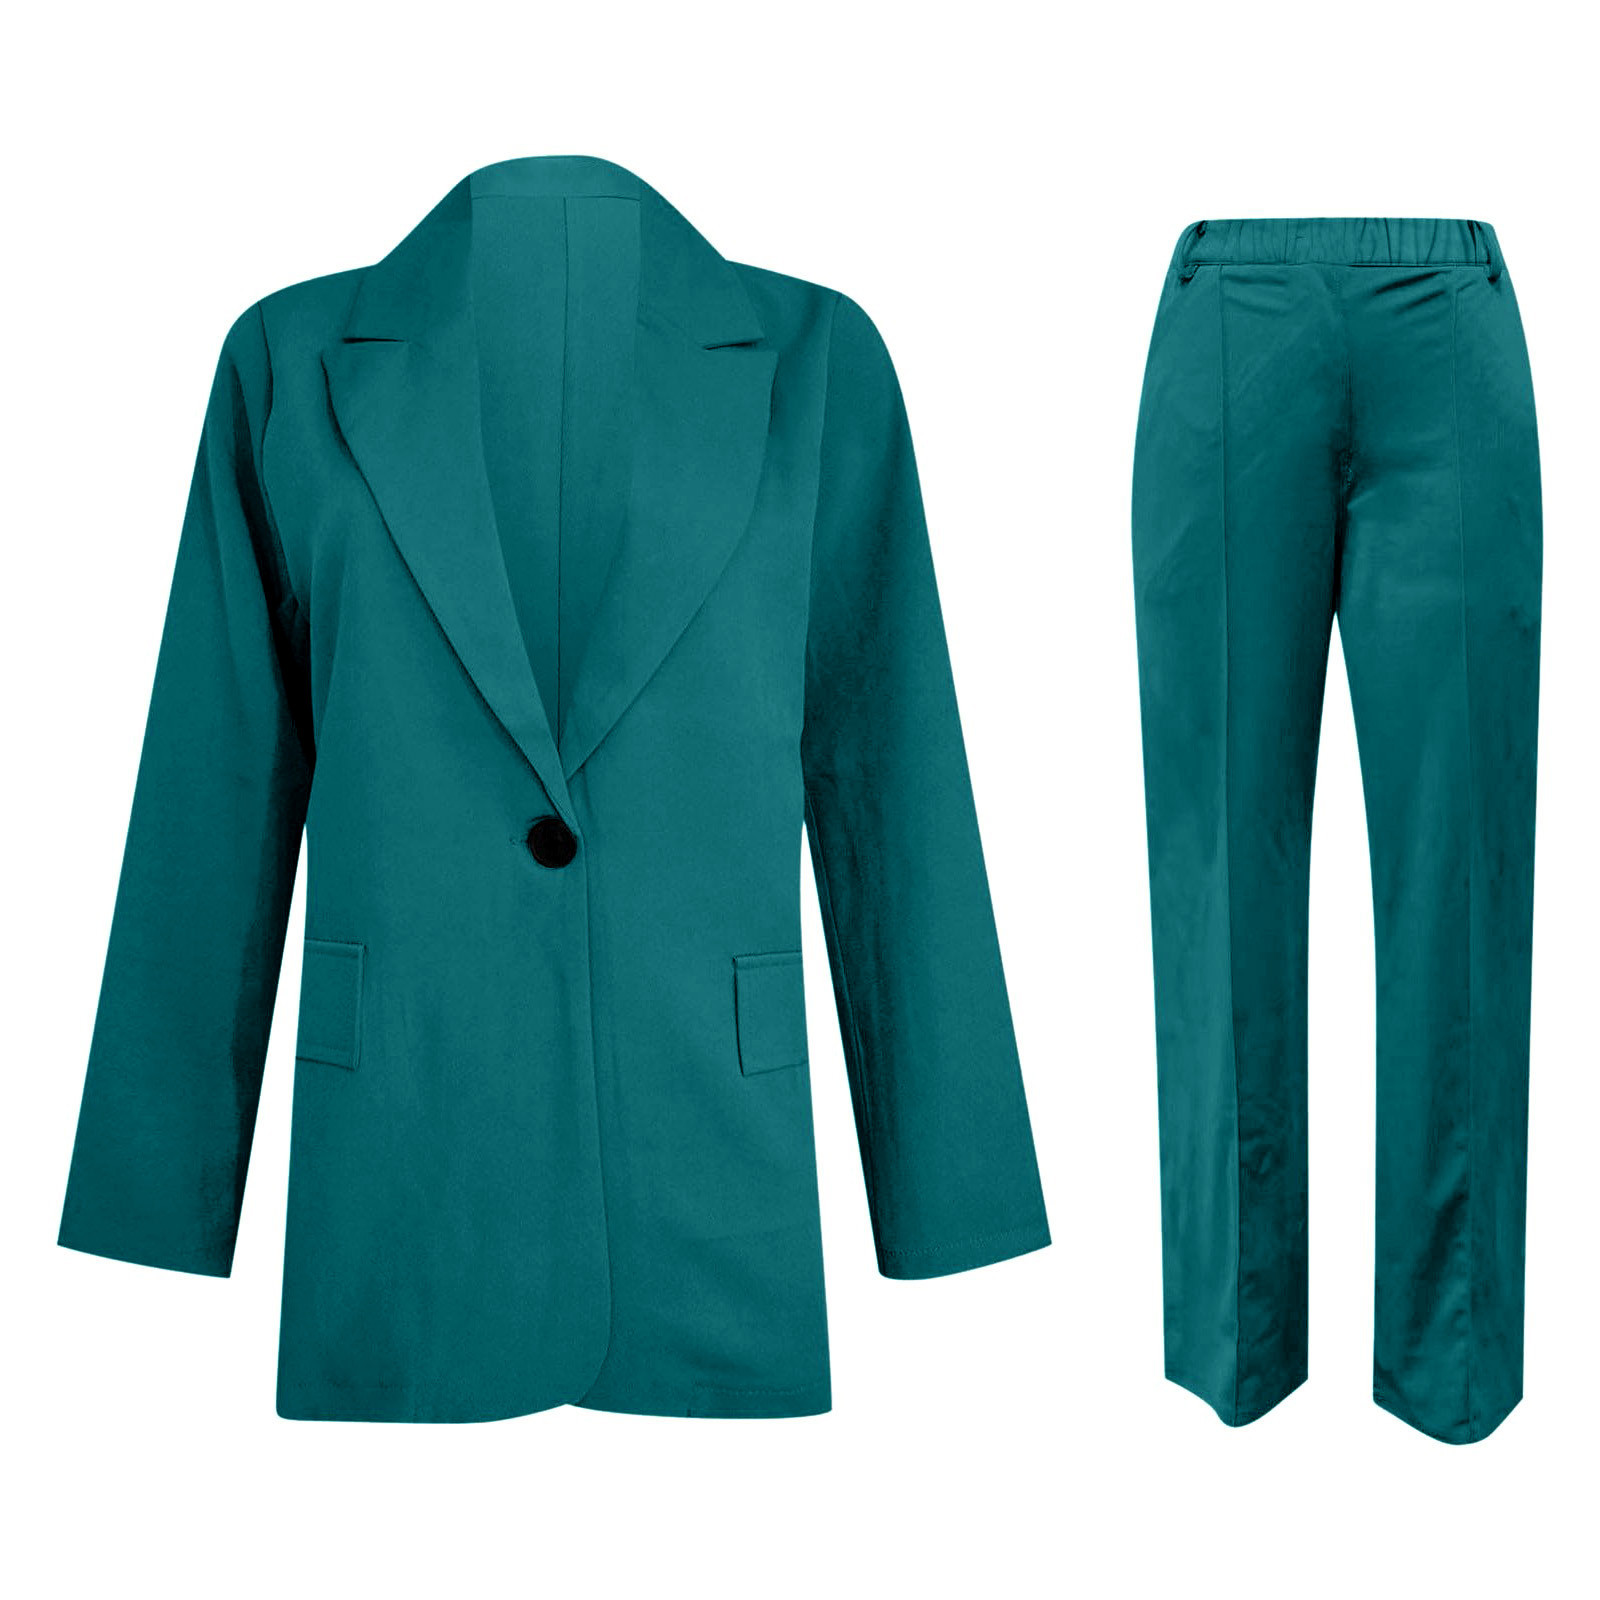 Kcodviy Women Two Piece Lapels Suit Set Office Business Long Sleeve ...